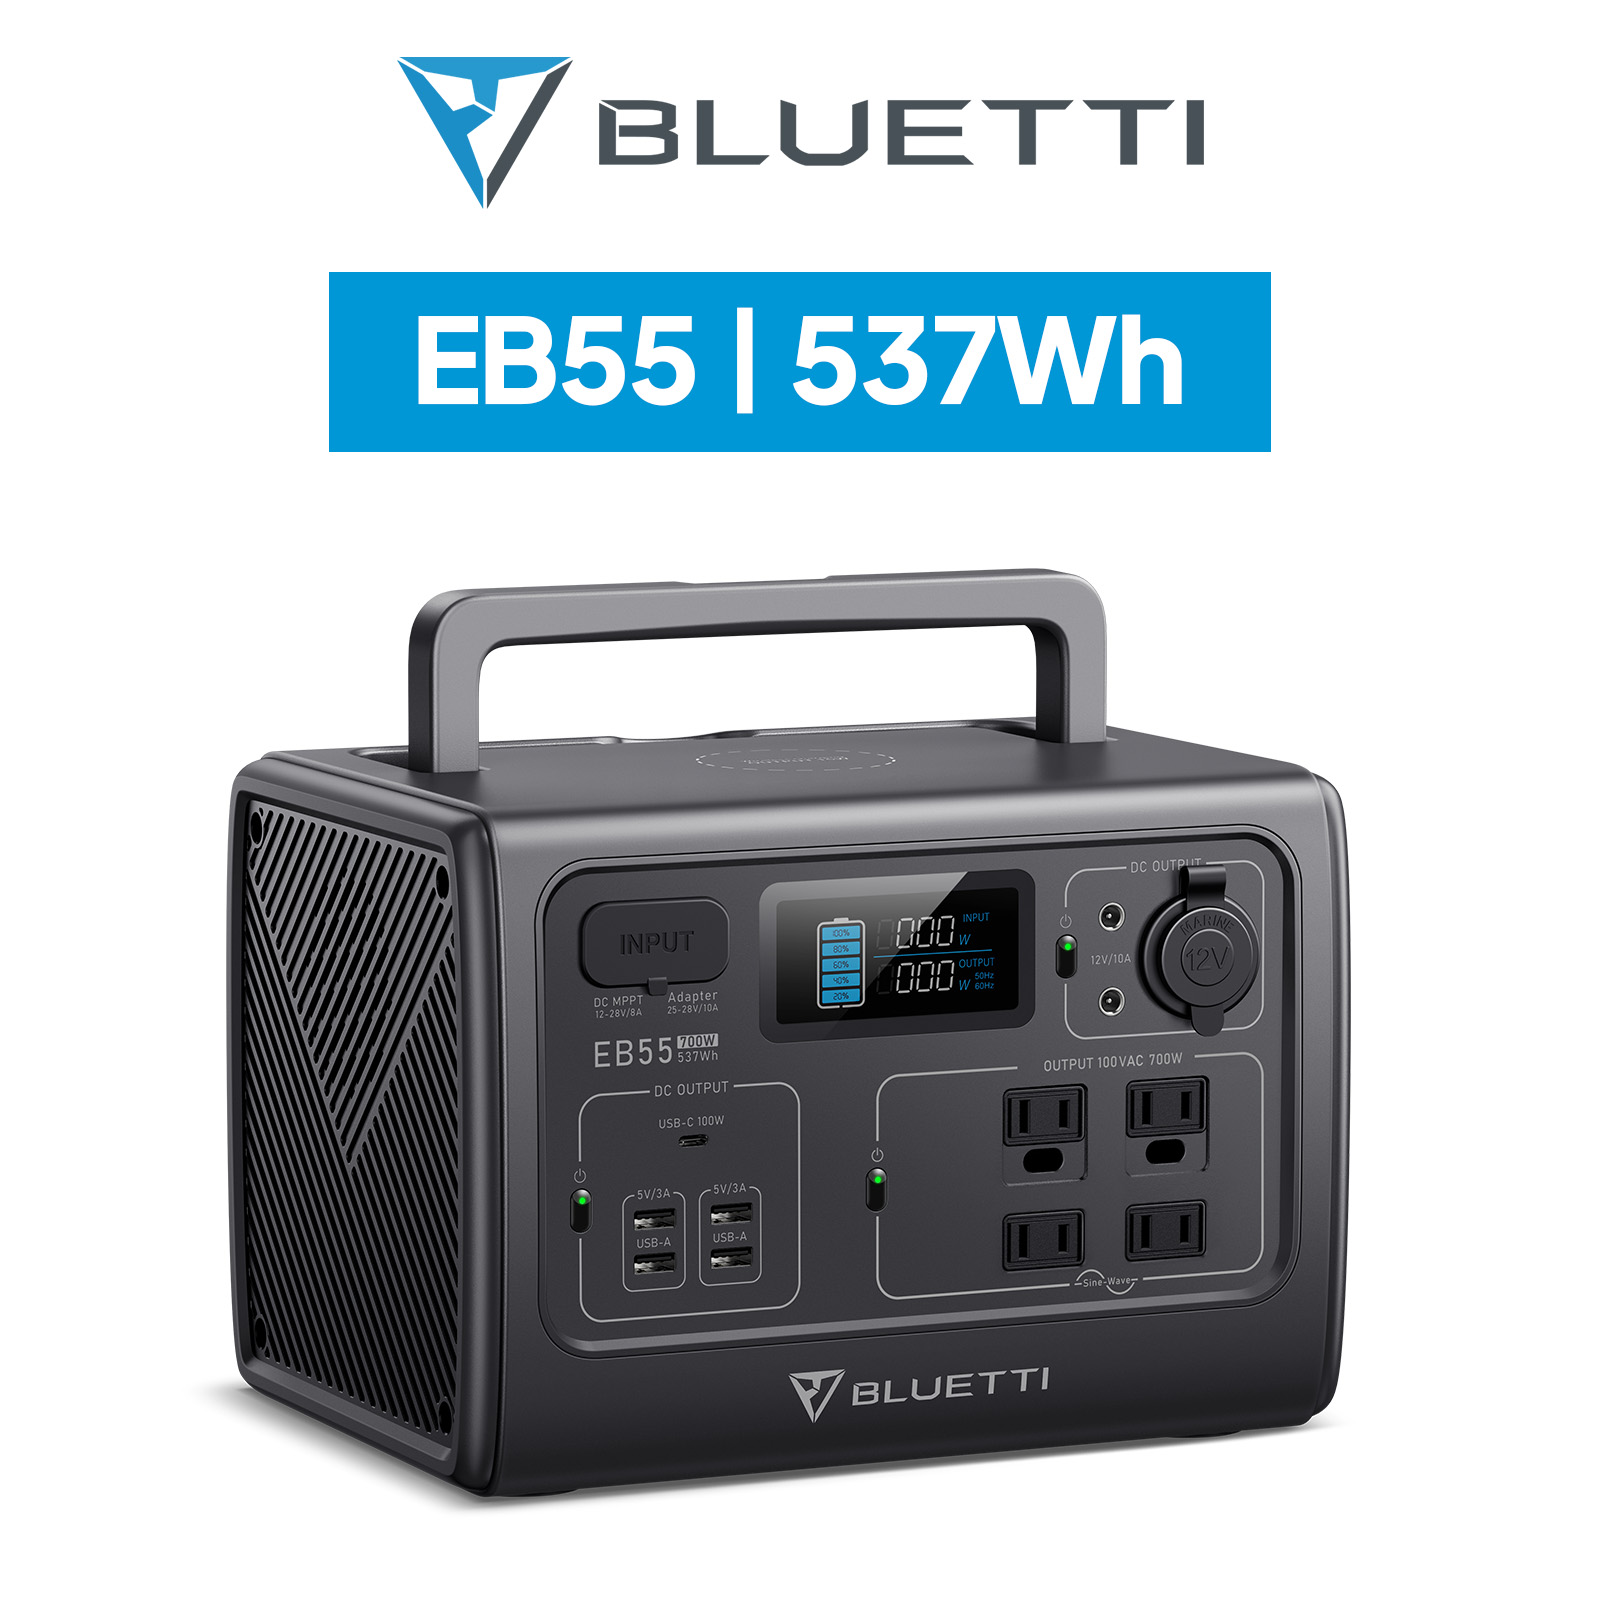 BLUETTI PS54 （ポータブル電源 537Wh/700W パススルー充電 純正弦波 MPPT制御方式採用） モバイルバッテリーの商品画像